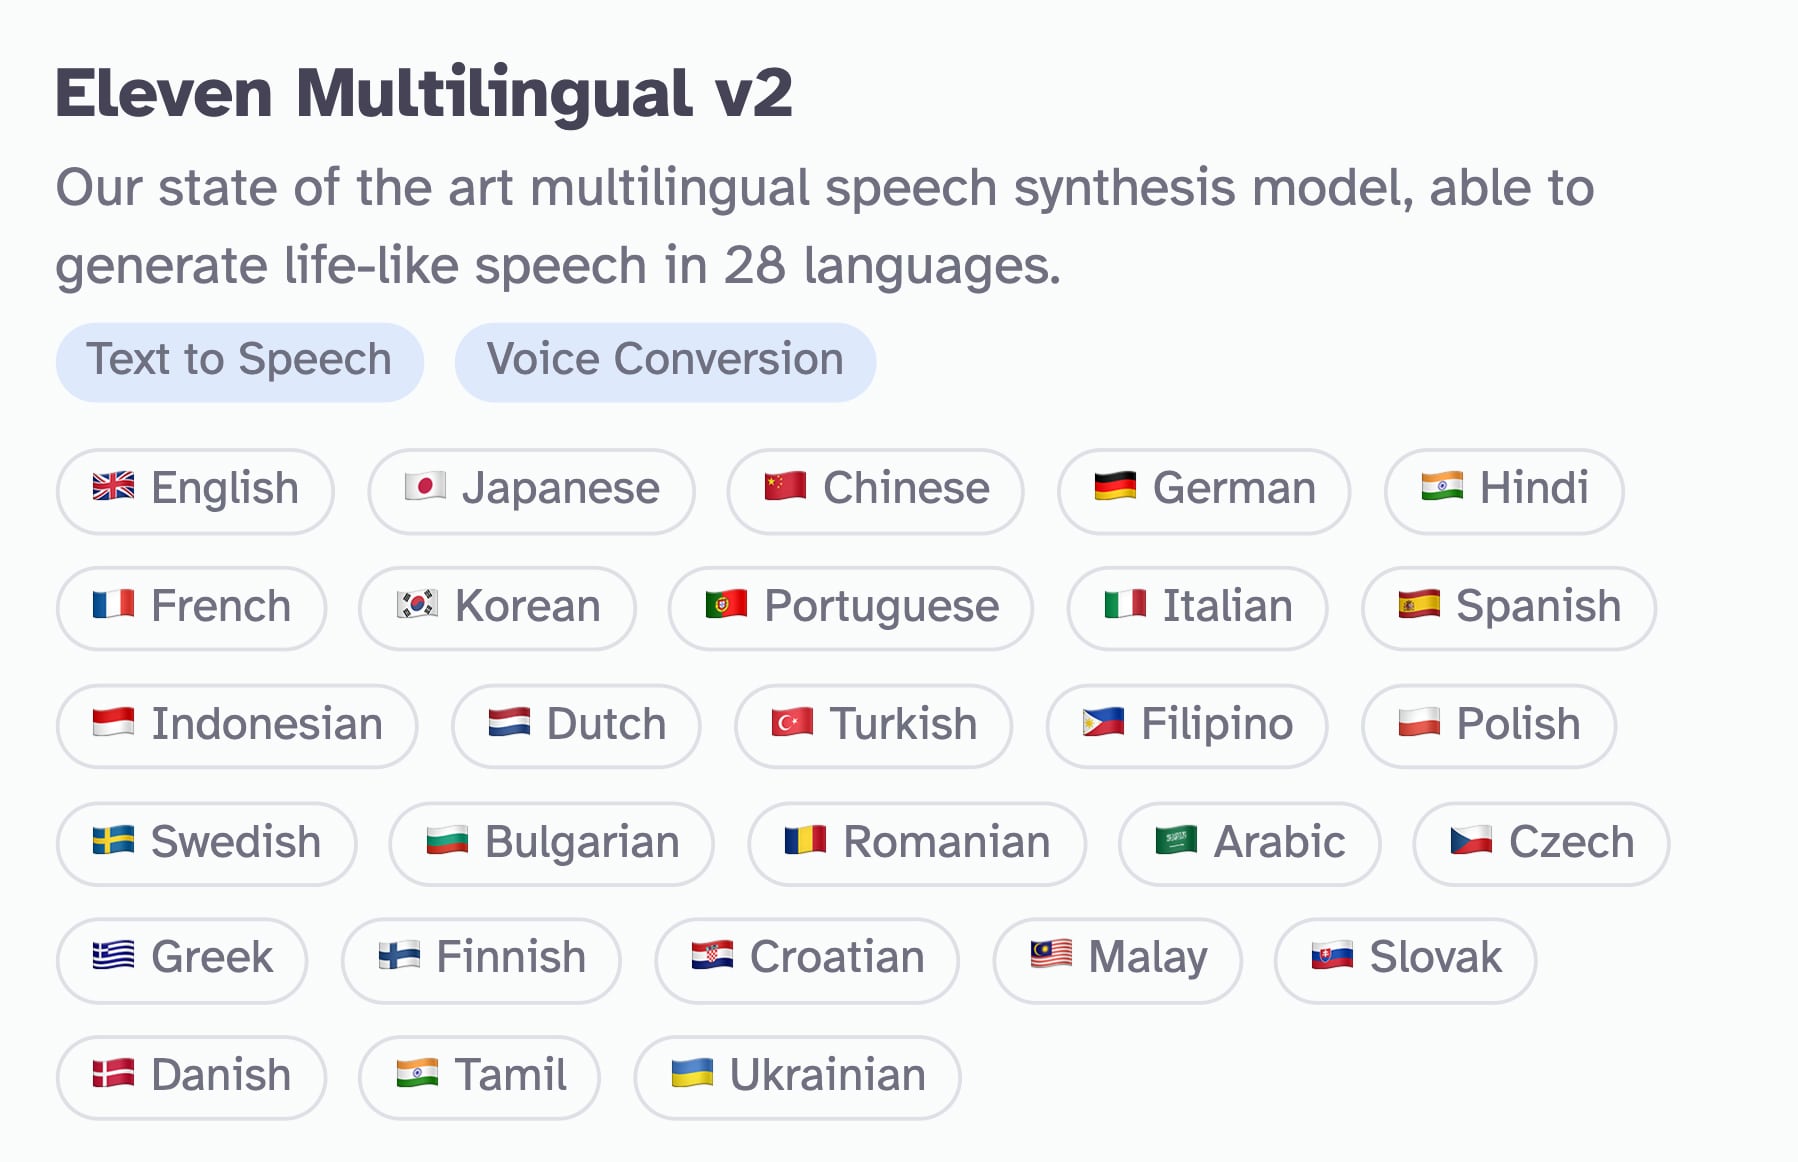 Multilingual V2